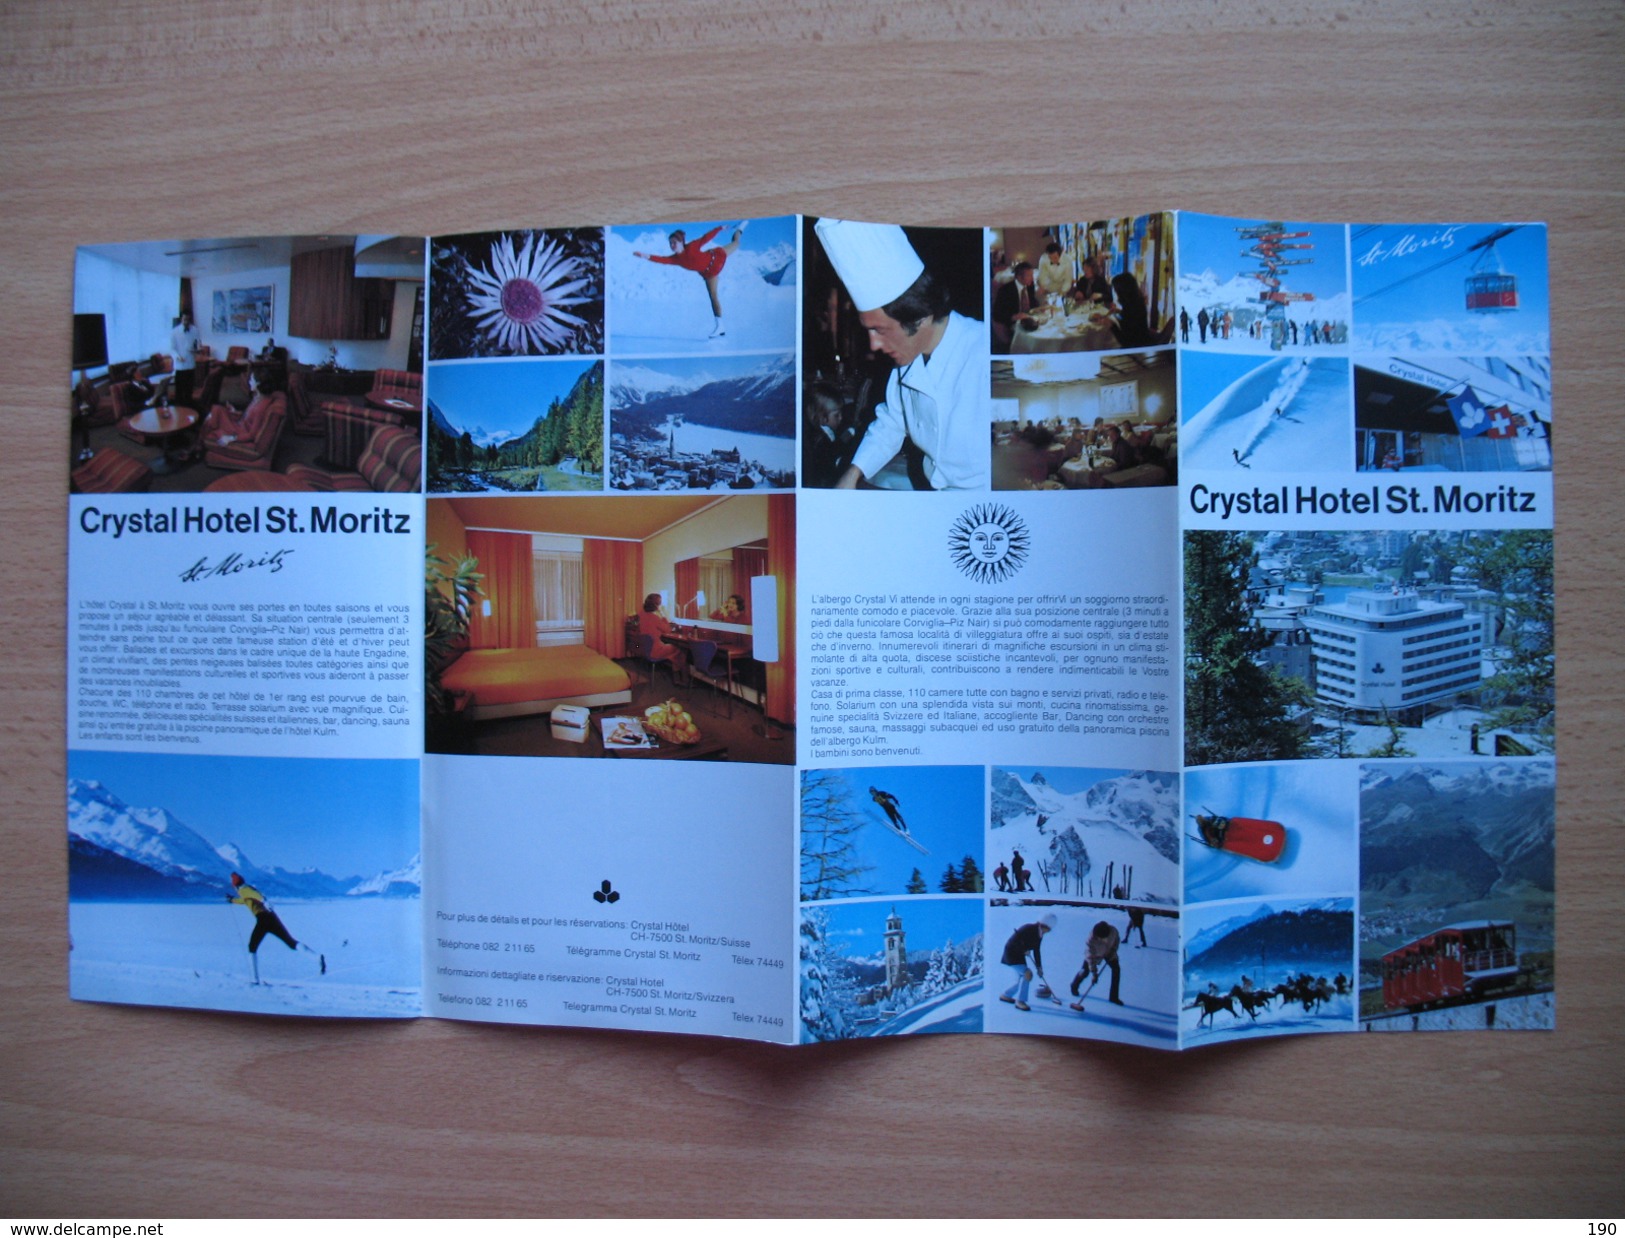 Crystal Hotel St.Moritz - Tourism Brochures